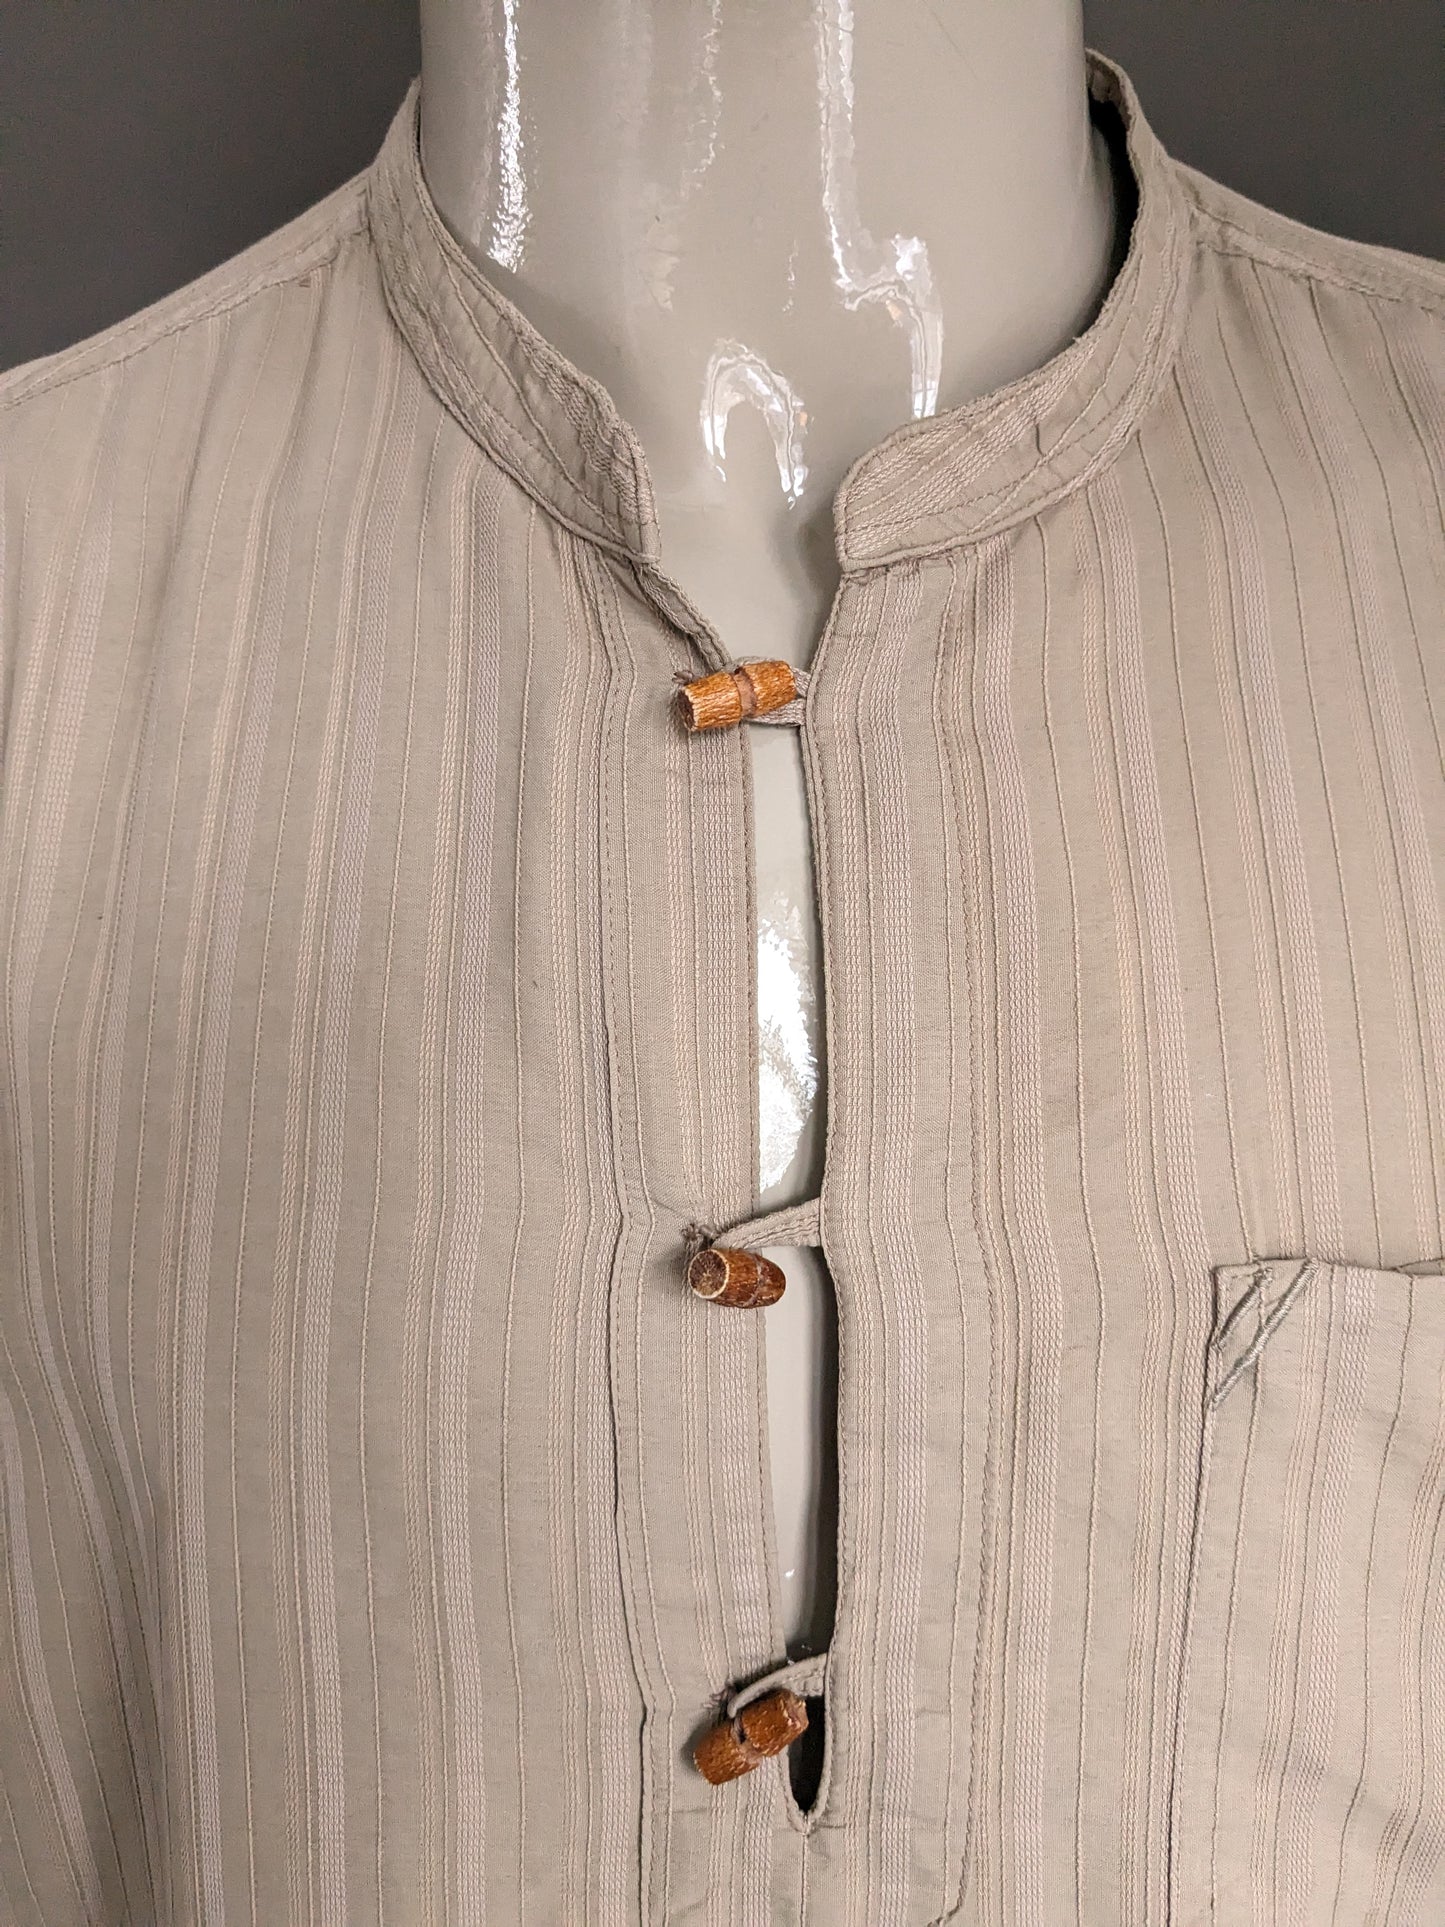 GRIGEMENT G-Club / Polo Mao / Collier surélevé avec boutons en bois. Motif brun clair. Taille xxl / 2xl.